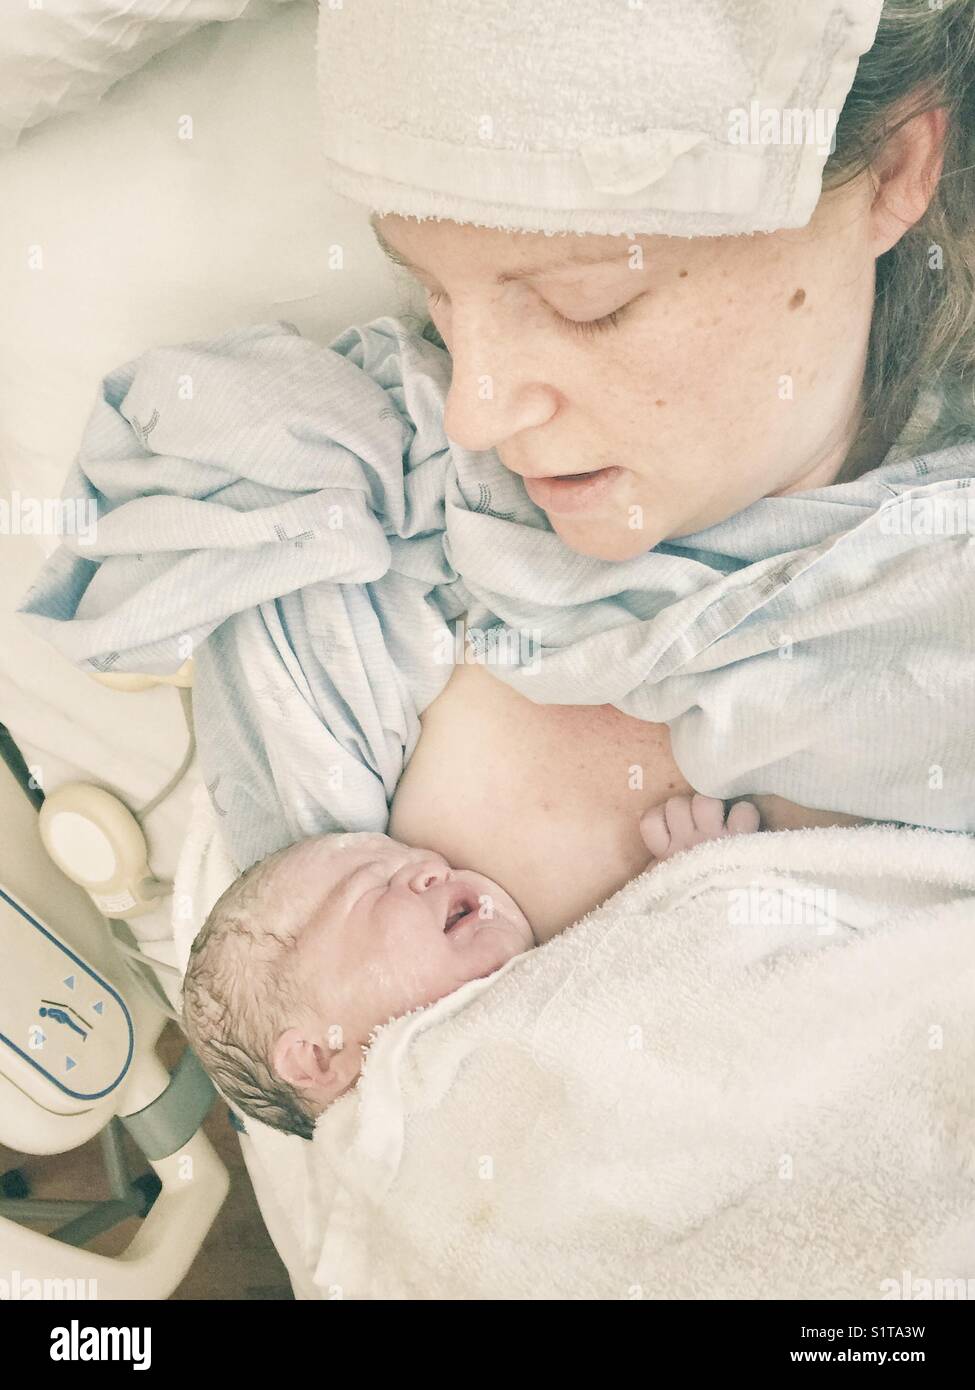 Immagine reale della nuova madre con appena nato il neonato sul petto immediatamente dopo il parto Foto Stock